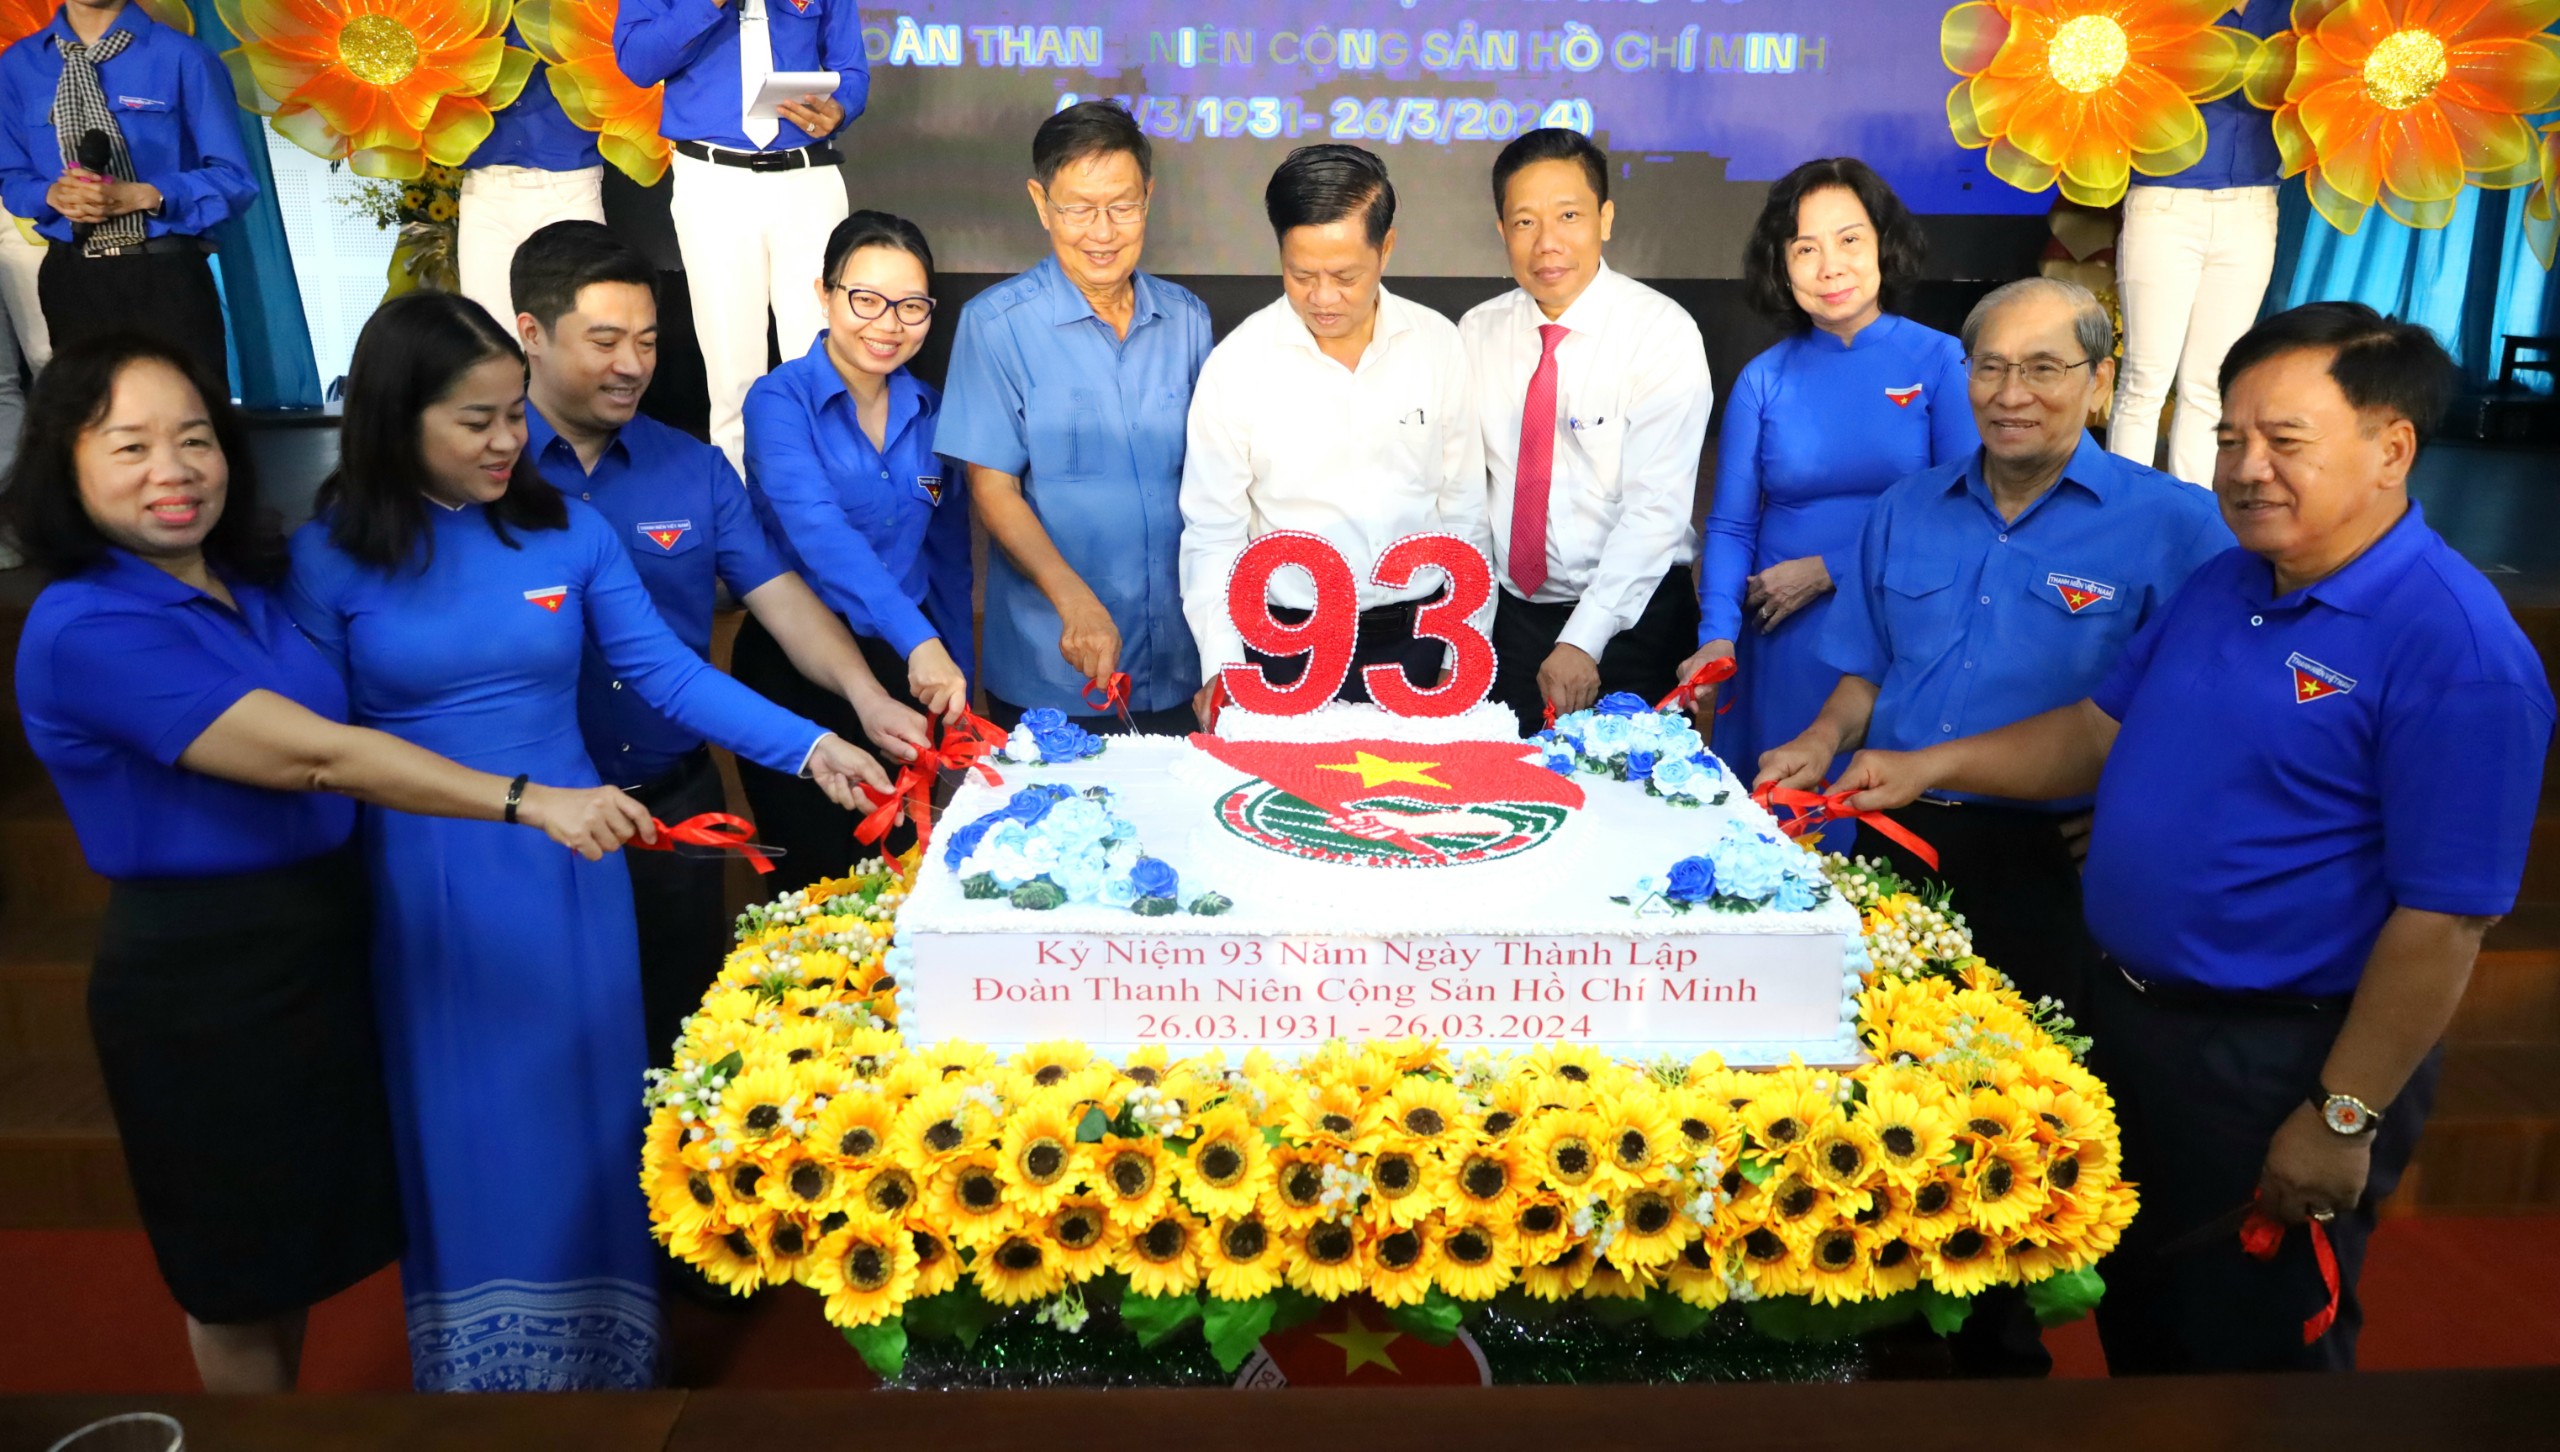 Các đại biểu thực hiện nghi thức cắt bánh sinh nhật mừng 93 năm ngày thành lập Đoàn TNCS Hồ Chí Minh (26/3/1931 - 26/3/2024).